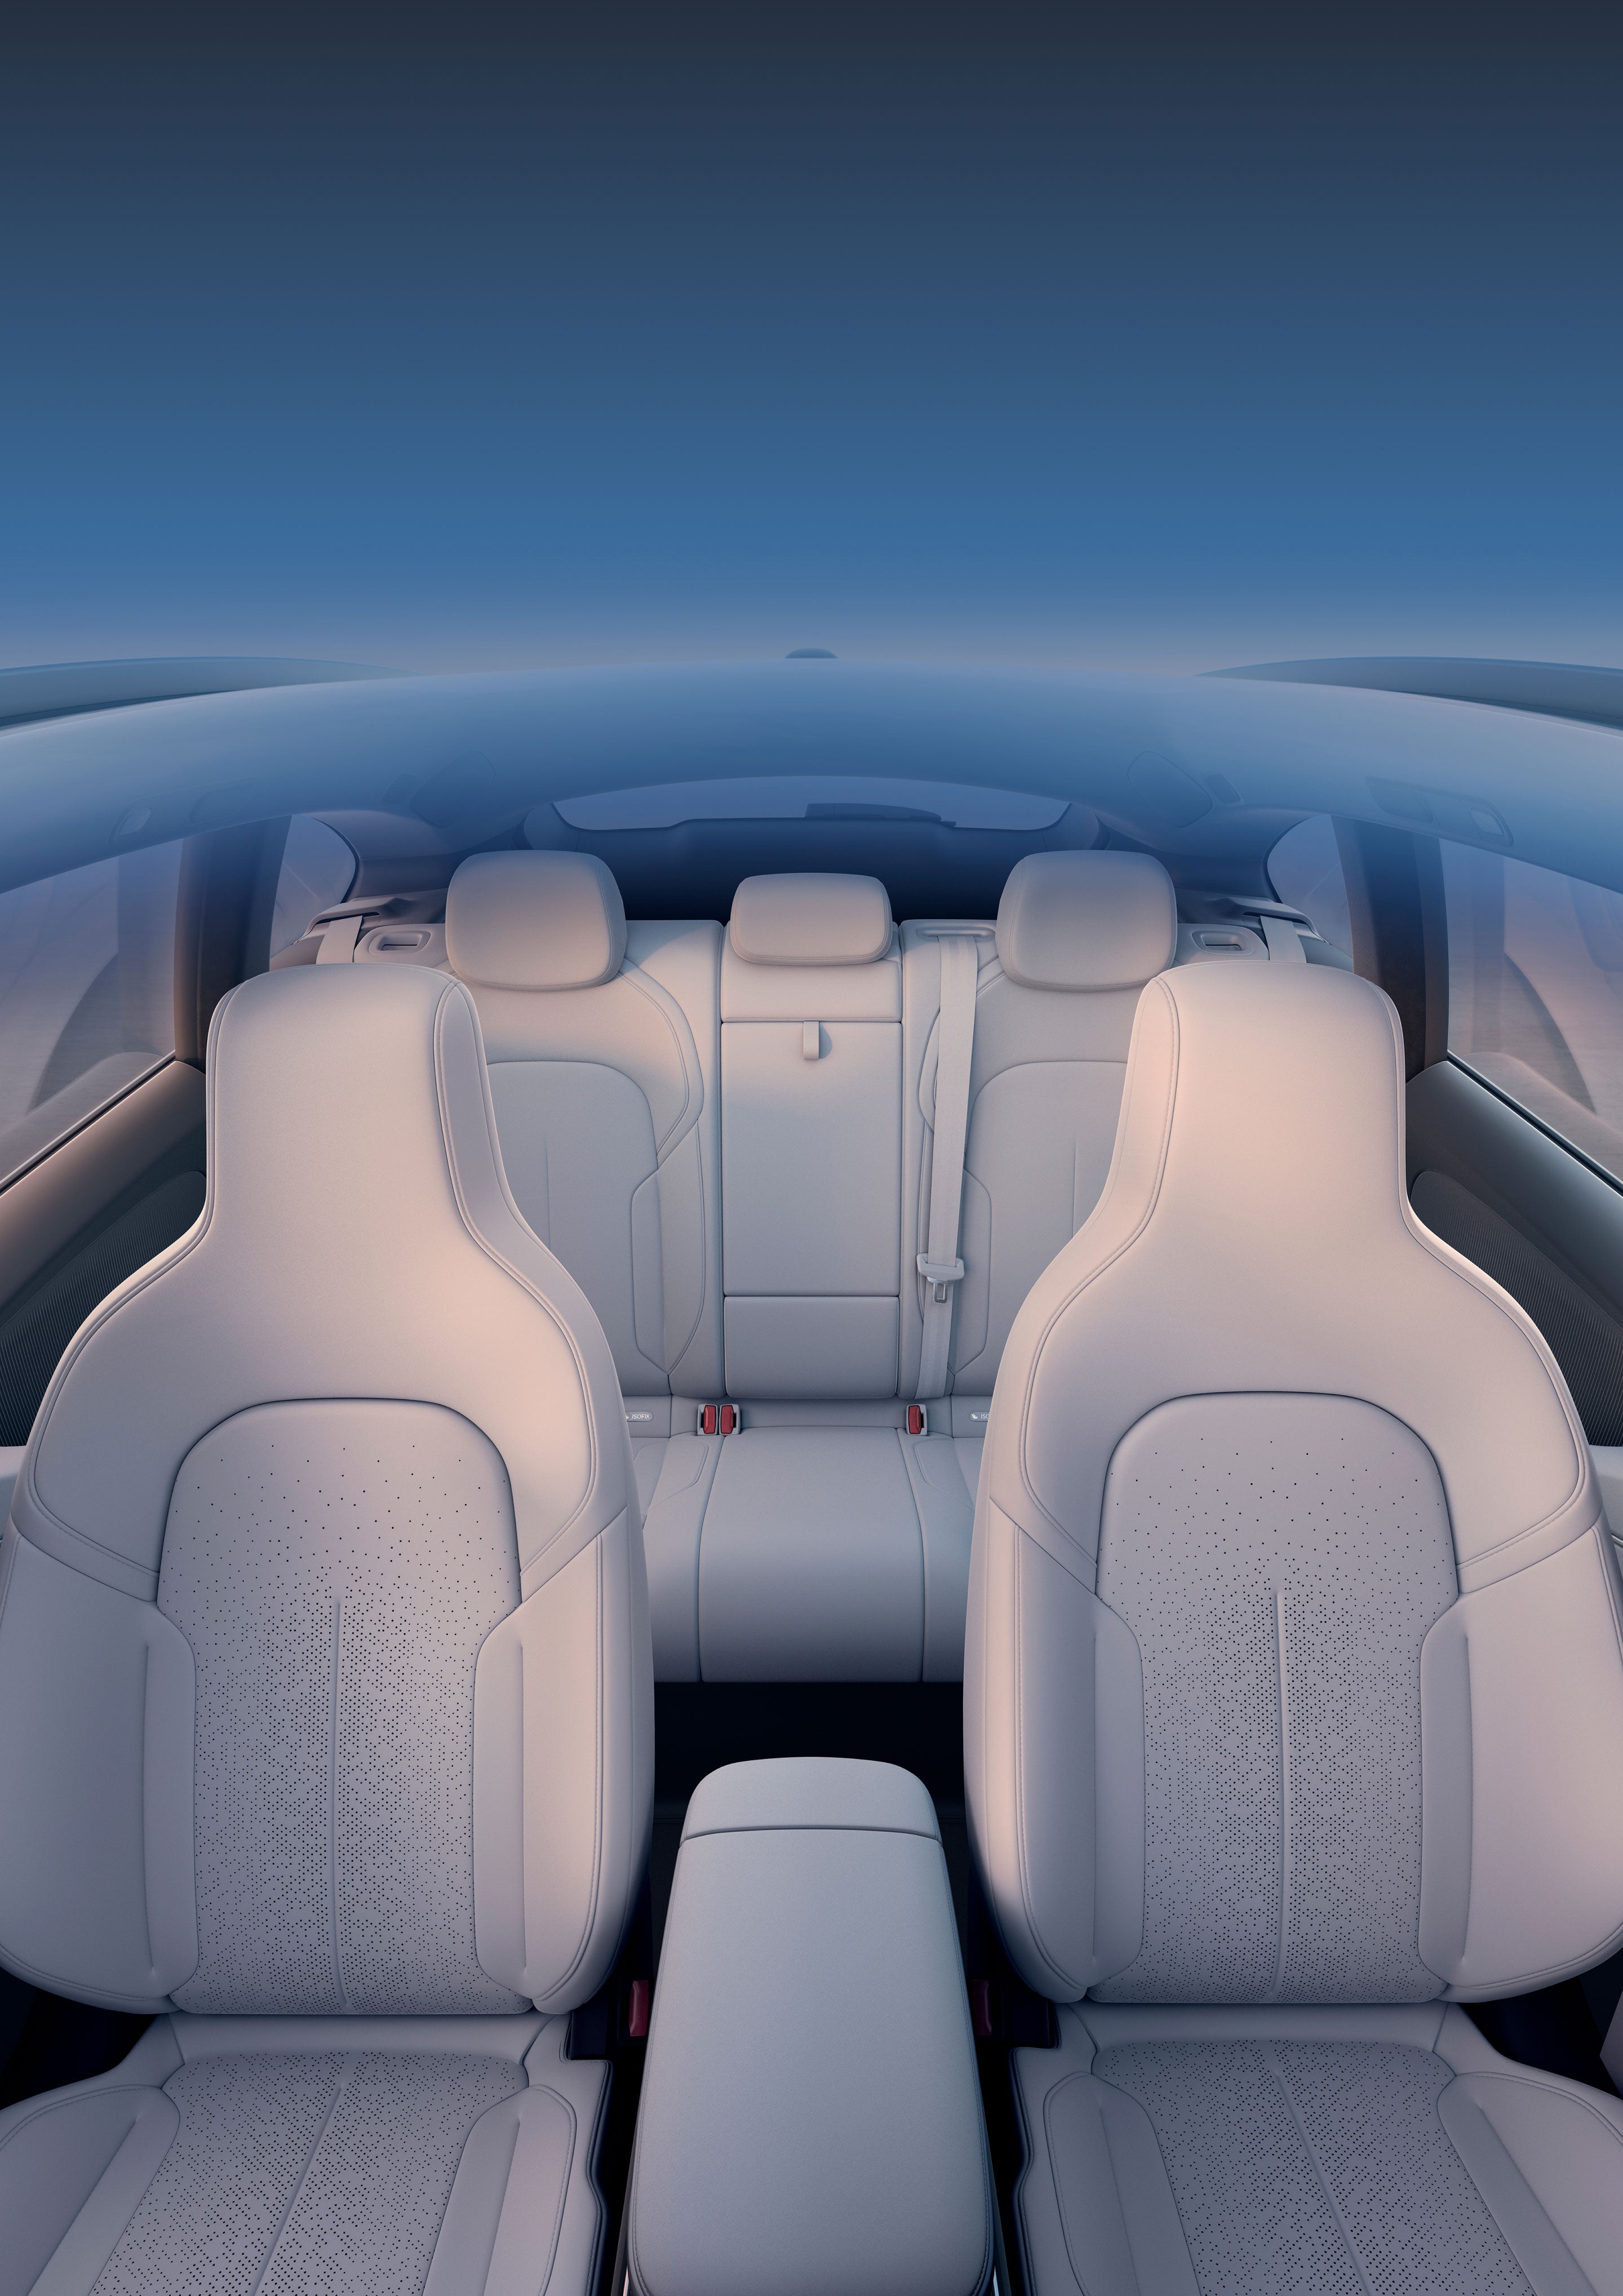 Interiøret er oplyst af det store panoramaglassoltag, der giver mulighed for et ultrastort dagslysområde på 1,35 ㎡. Det bringer omverdenen ind i kabinen, og er med til at give en følelse af lys og glæde på rejsen.